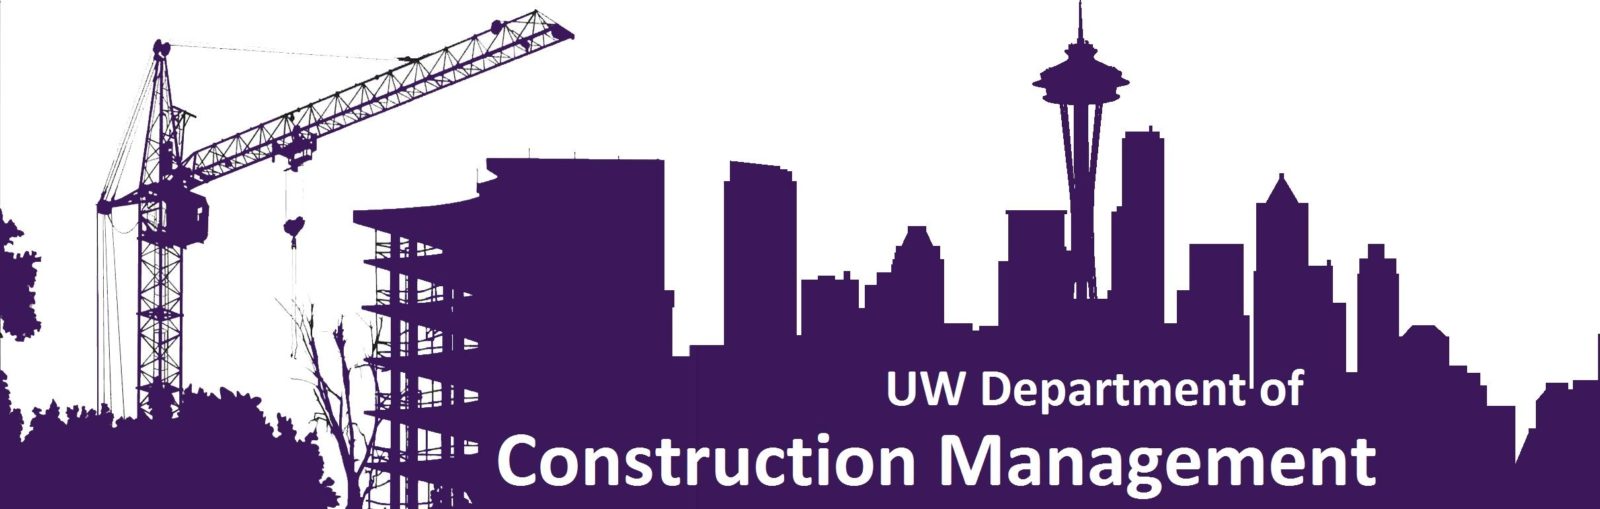 UW Department of Construction Management